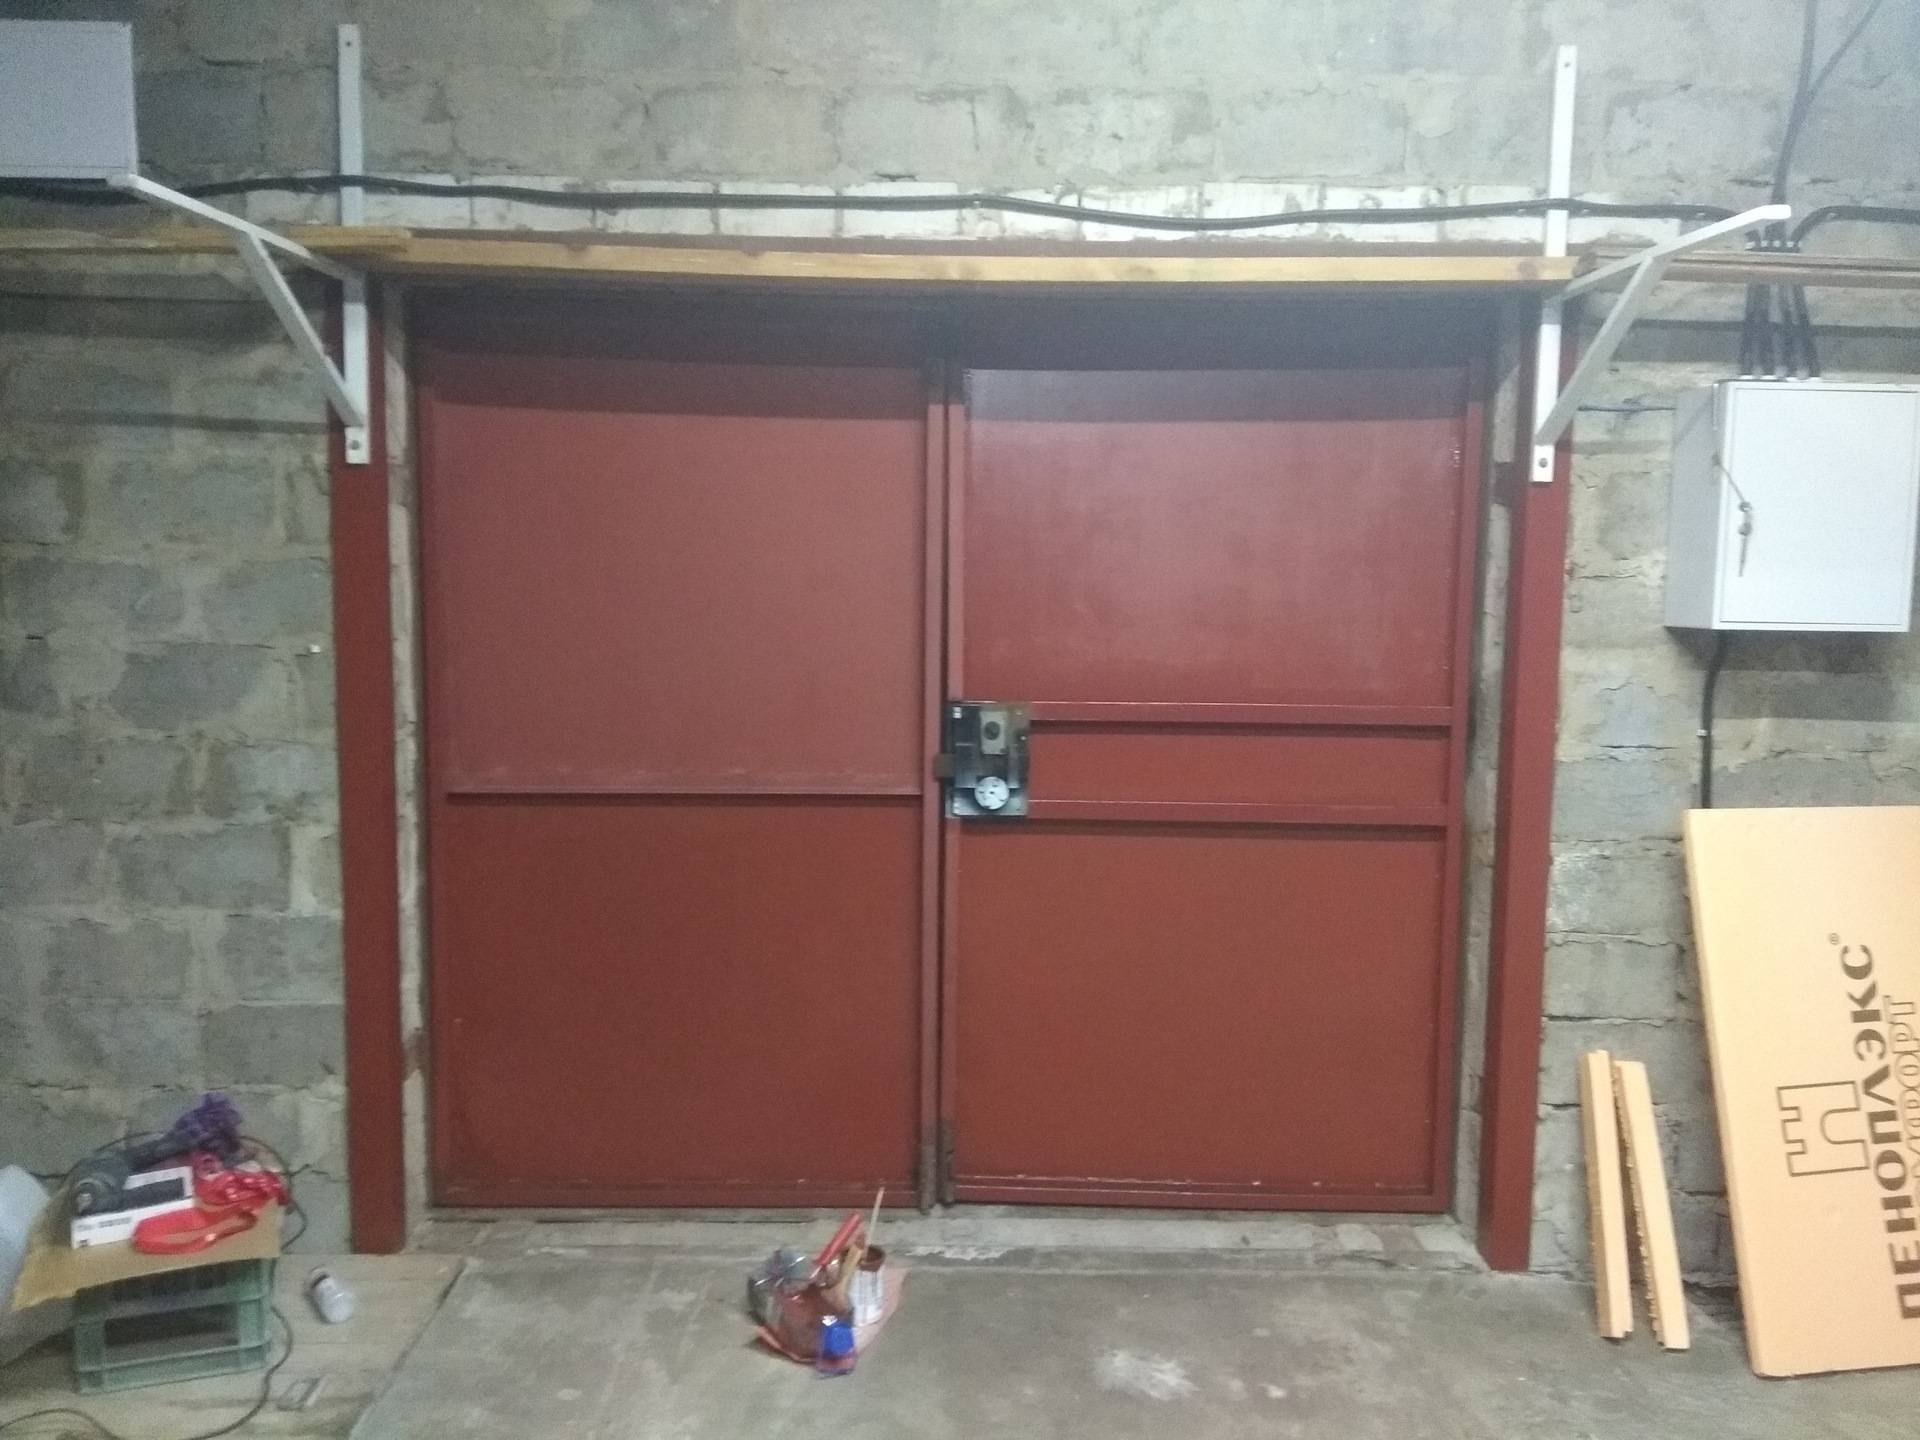 Как утеплить ворота в гараже своими руками изнутри - пенопластом, пеноплексом и другими материалами - все о строительстве